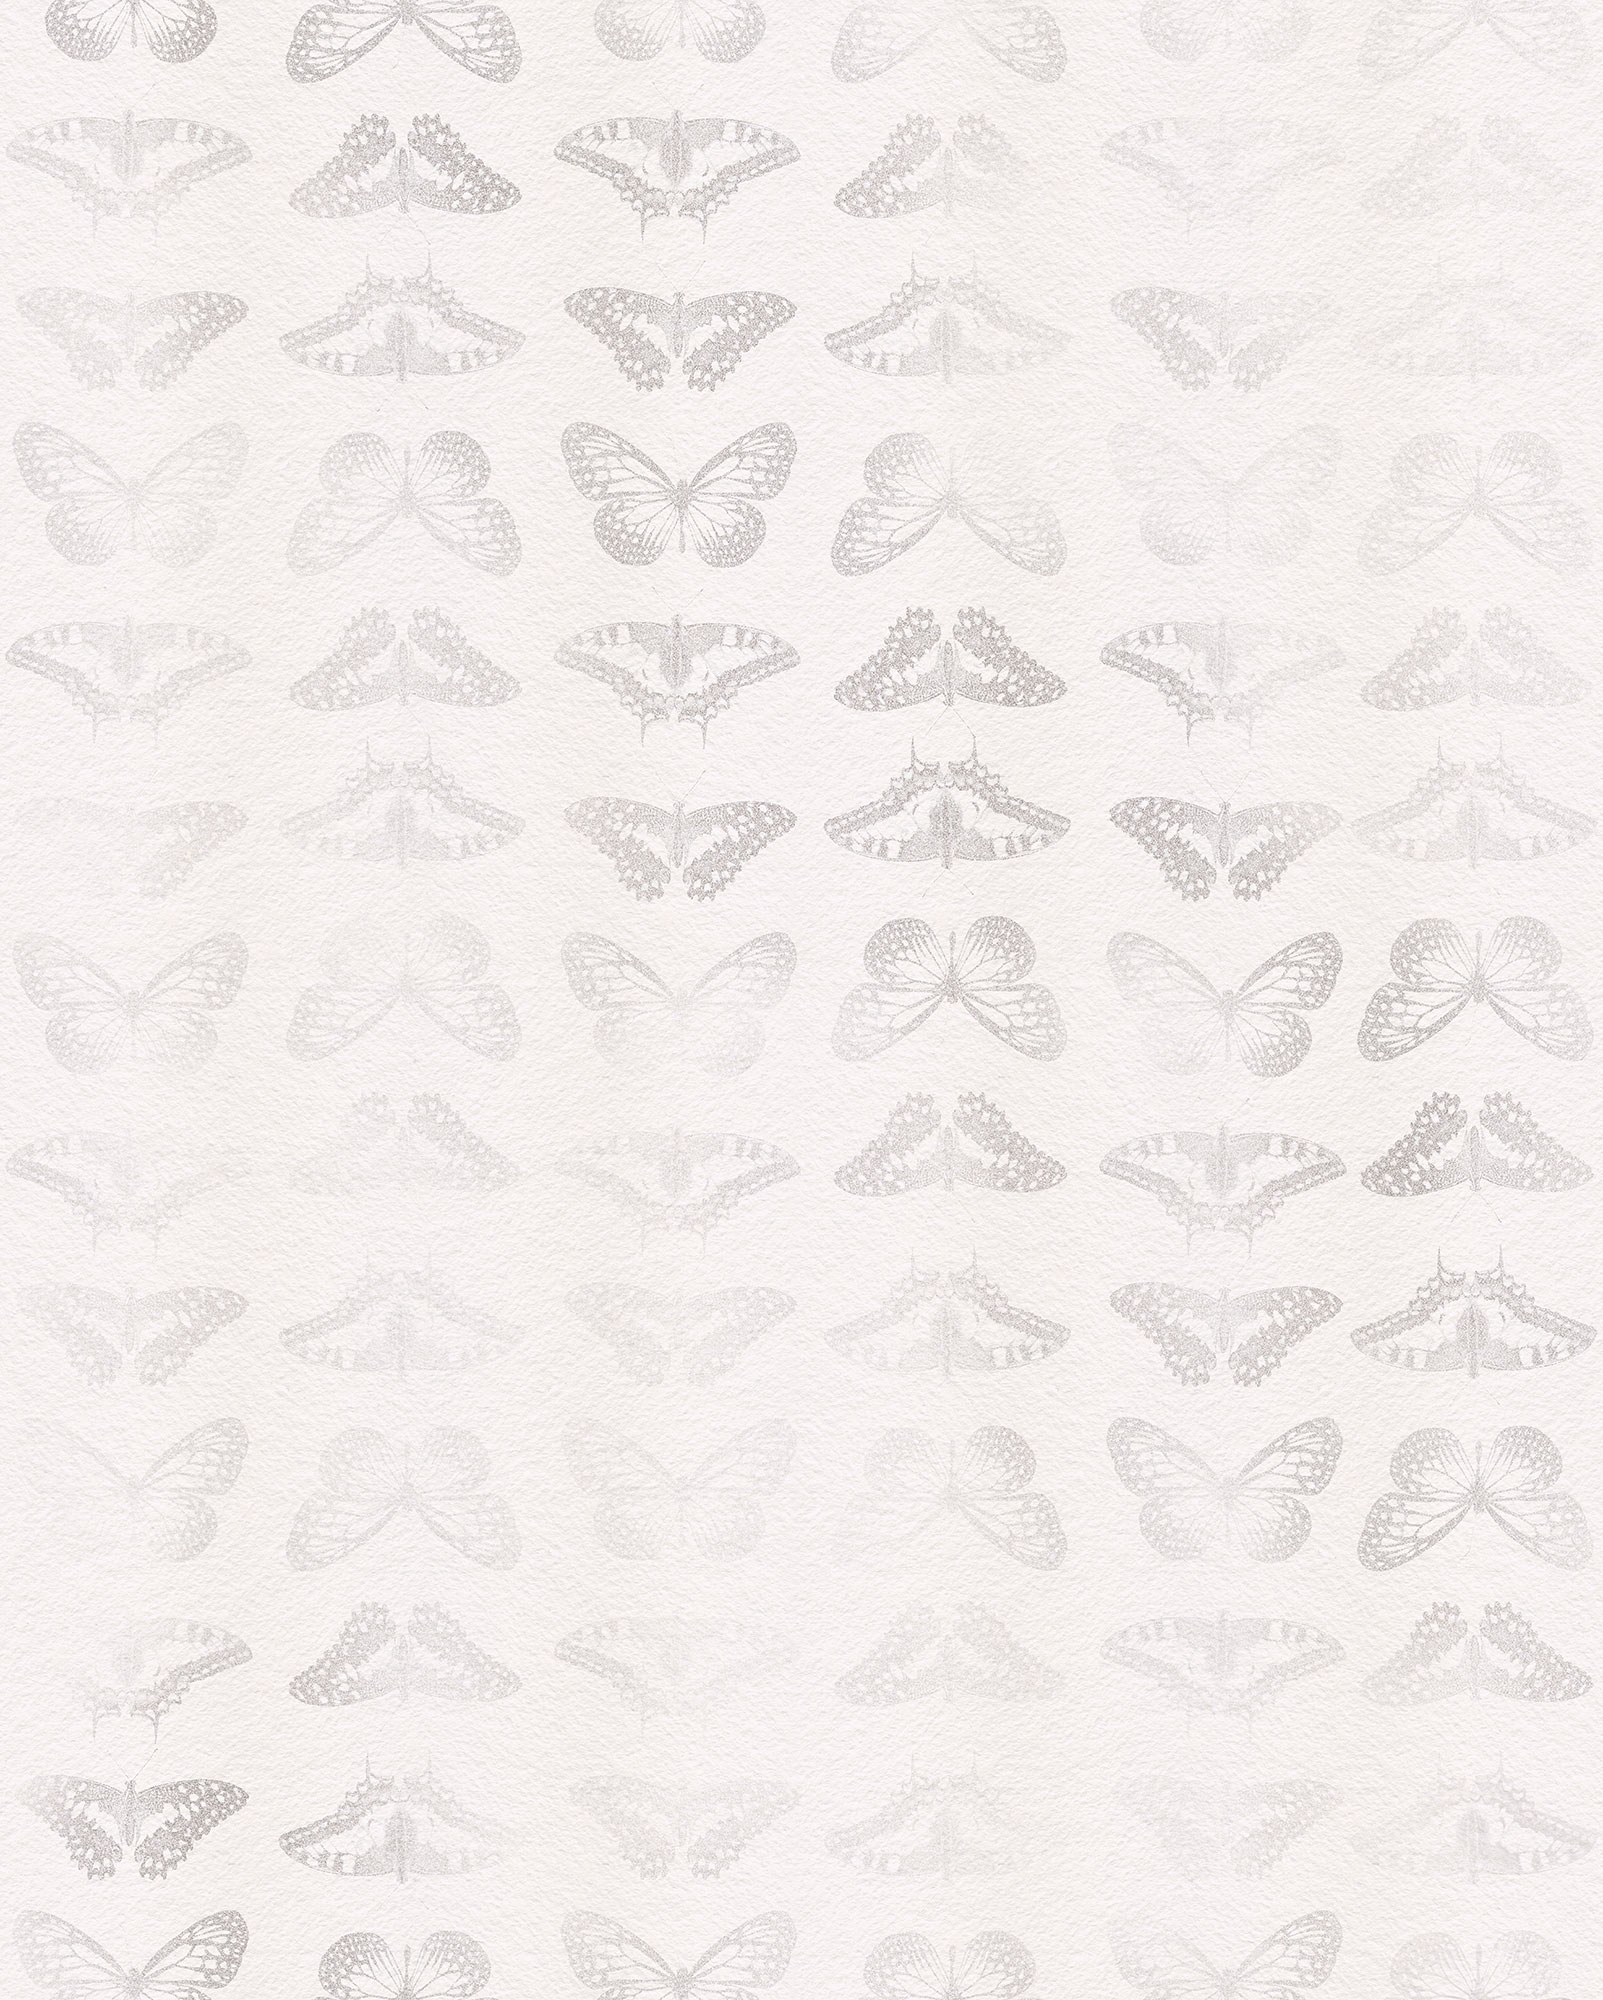 X4-1076  Mur De Papillons  - Fotomurale Komar Imagine Ed.5- Collezione Colours - Misura Cm.200x250 H.